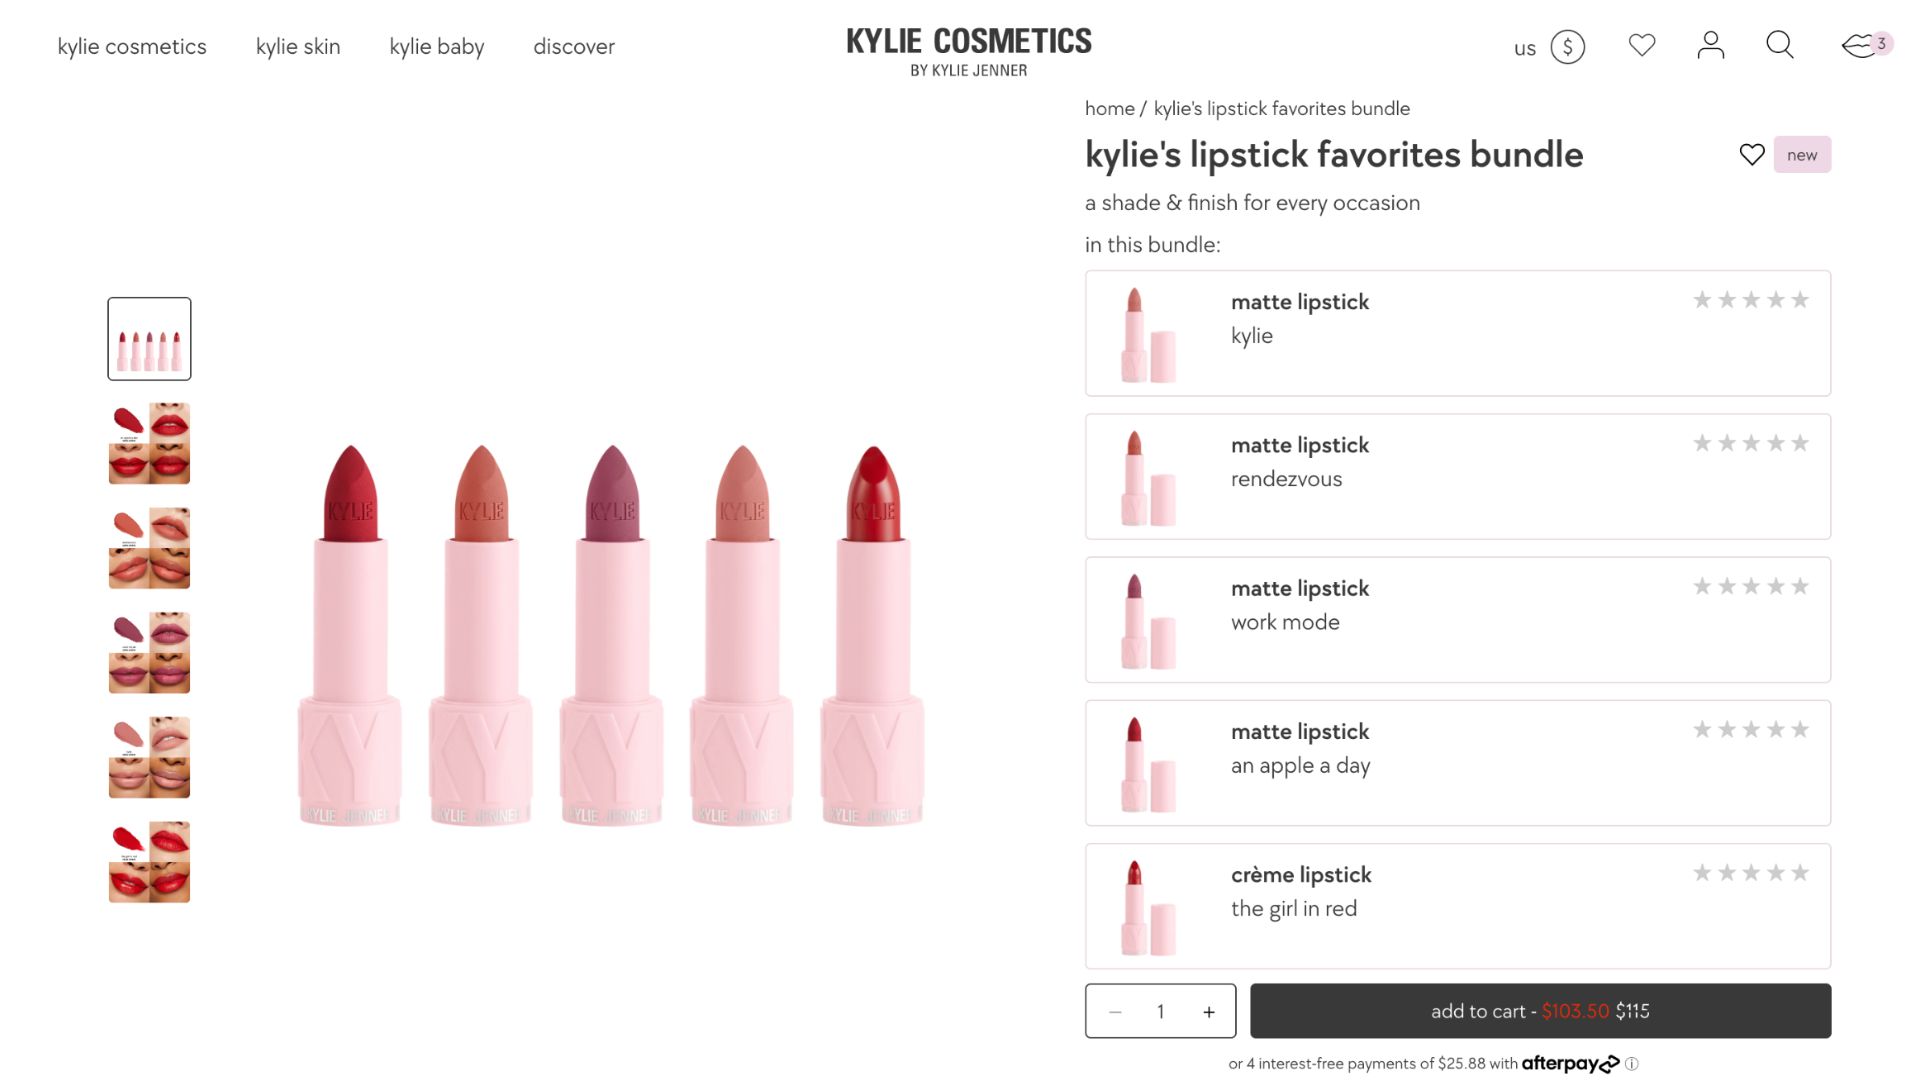 kylie's lipstick favourites bundle